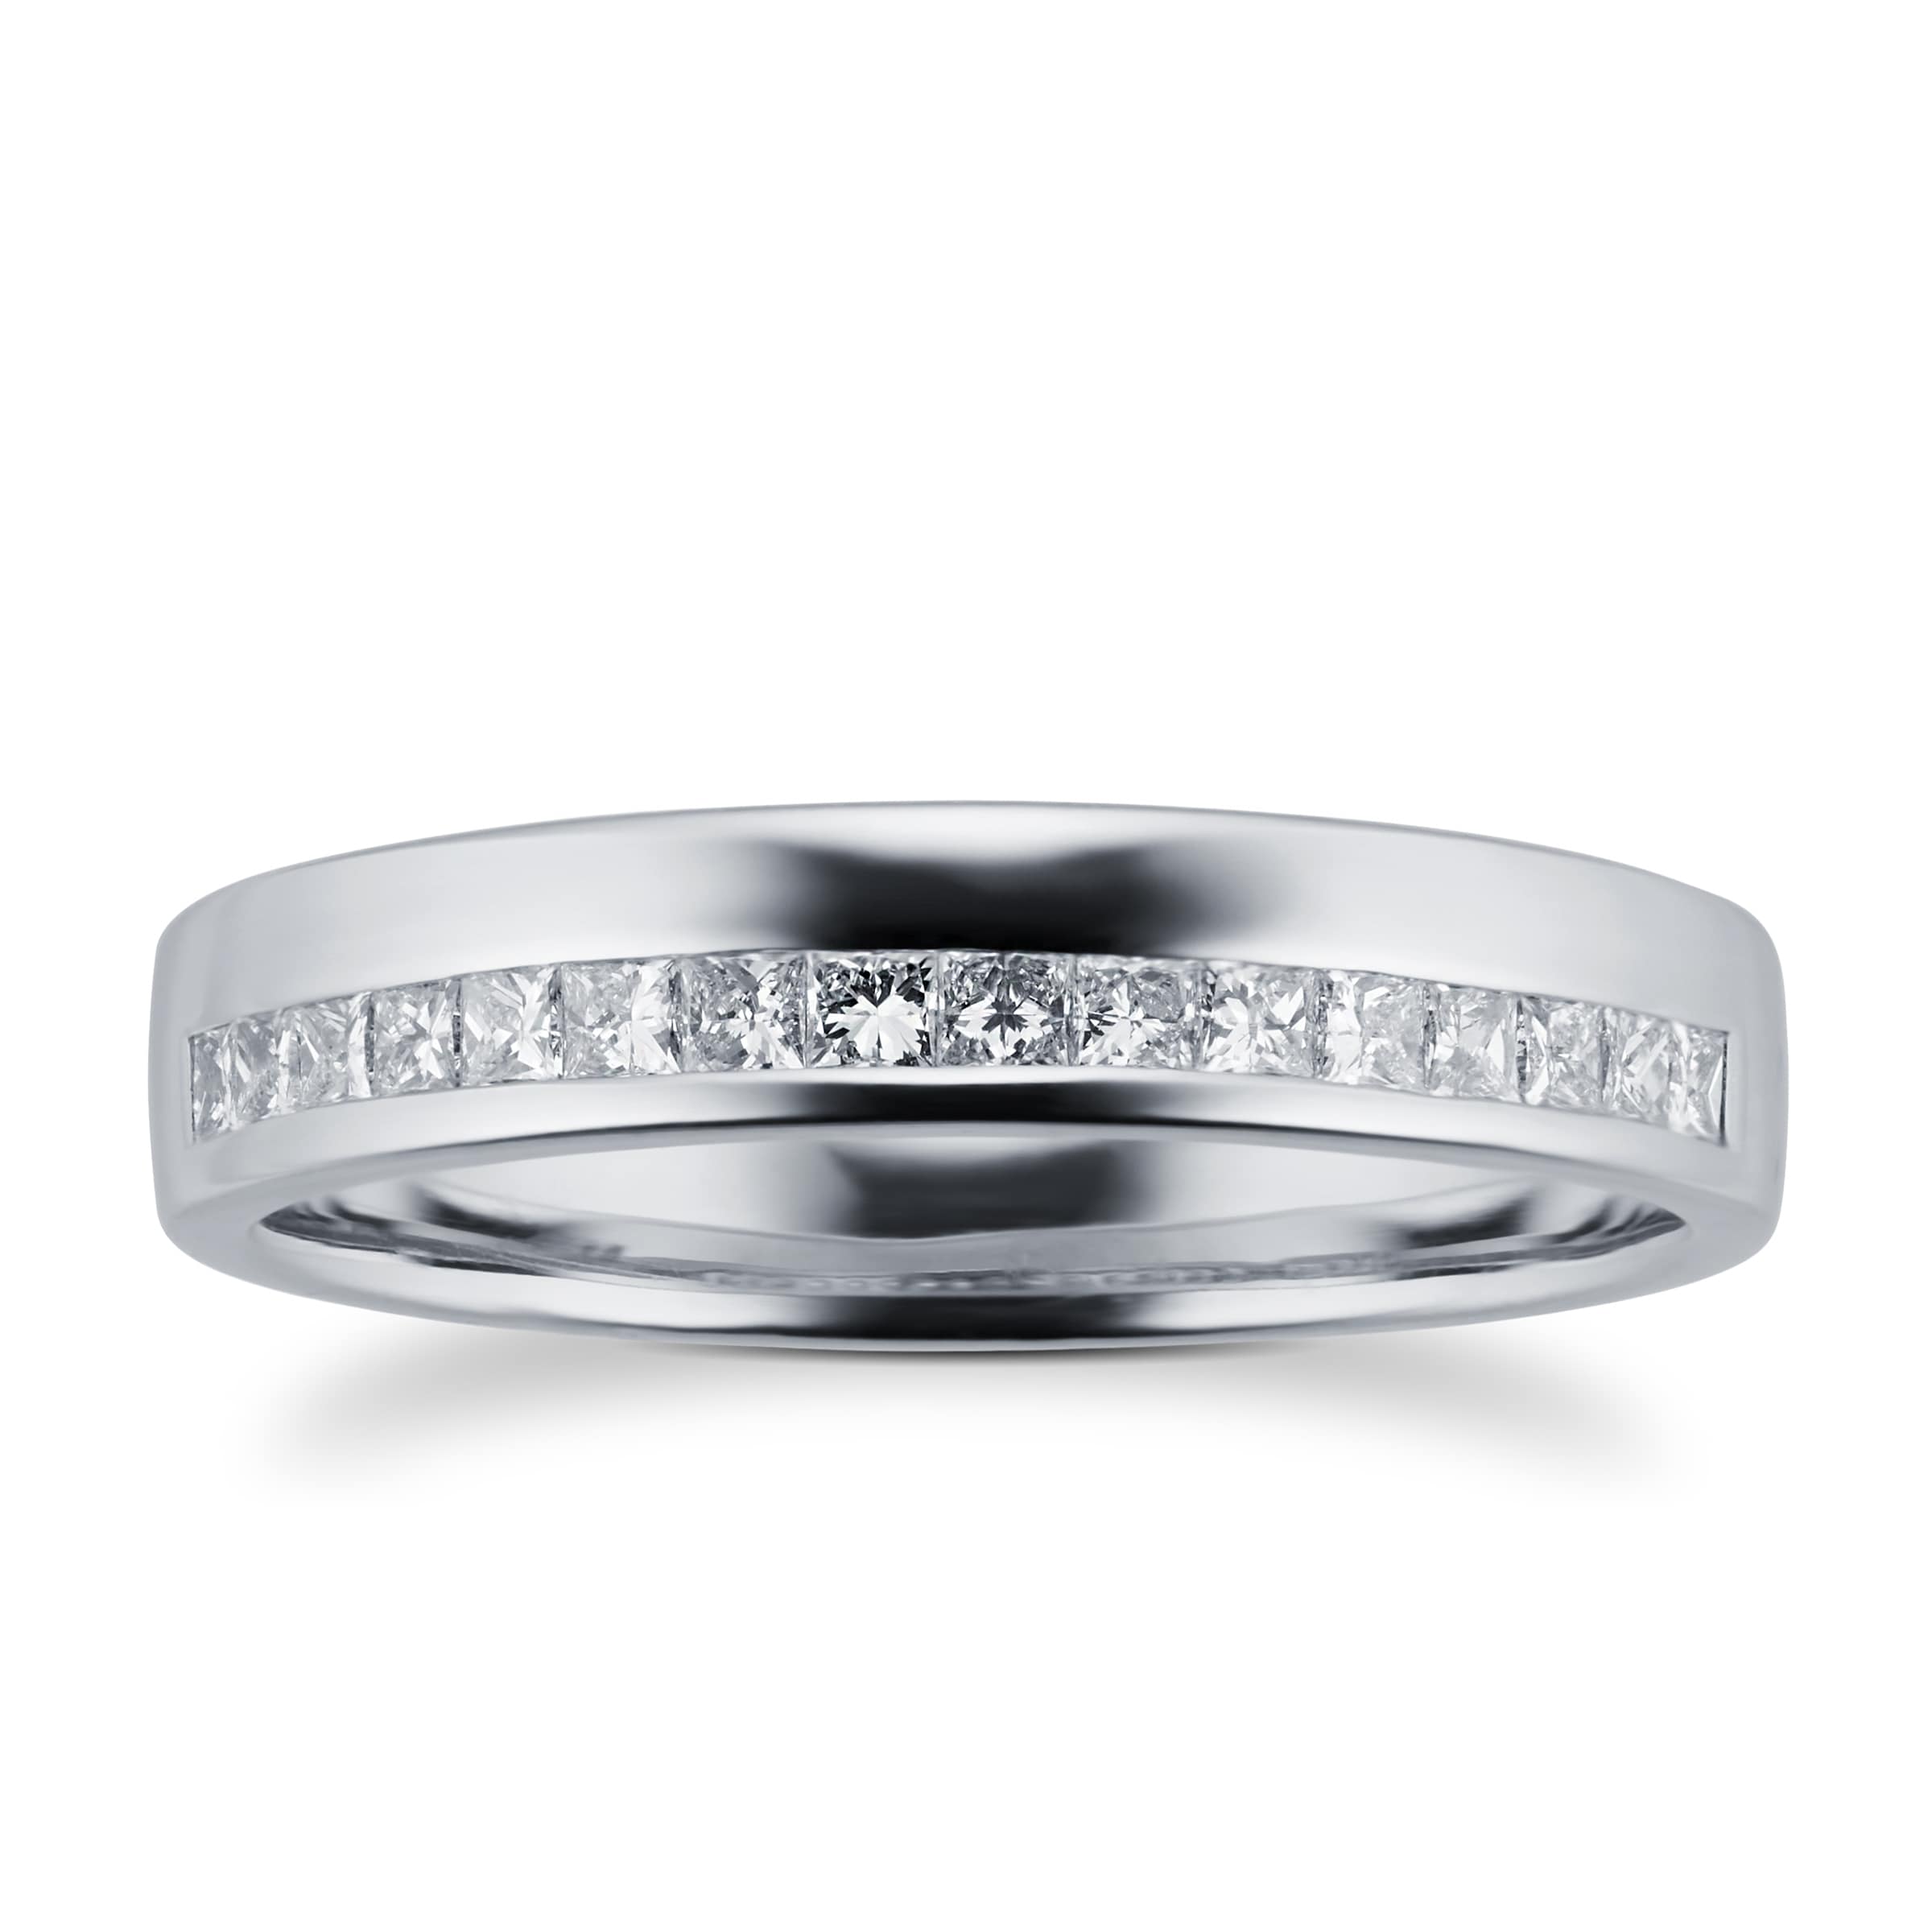 Princess Cut 0.33 Total Carat Weight Diamond Ladies Wedding Ring Set In Platinum - Ring Size L